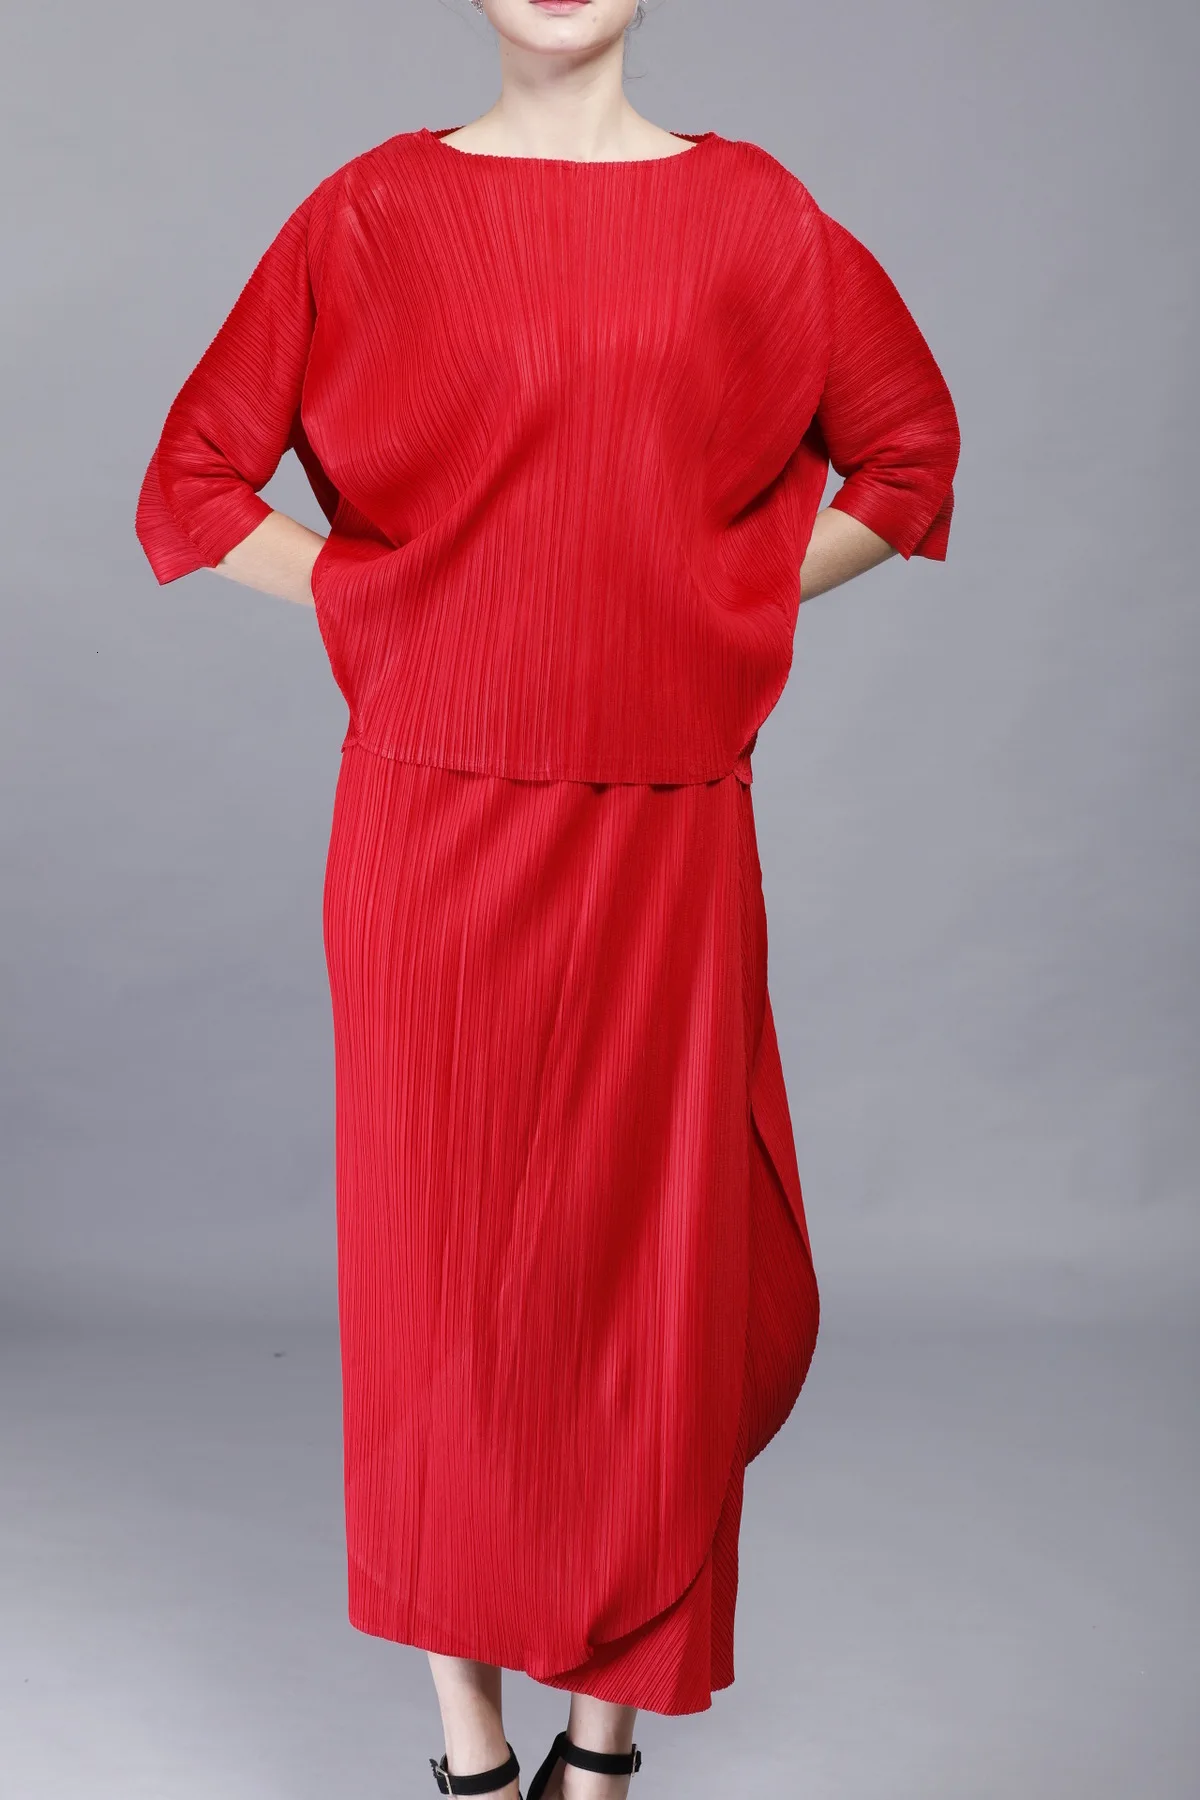 LANMREM/2019 новая весенняя модная плиссированная одежда свободные топы с рукавами «летучая мышь» + стандартная юбка с высокой талией комплект